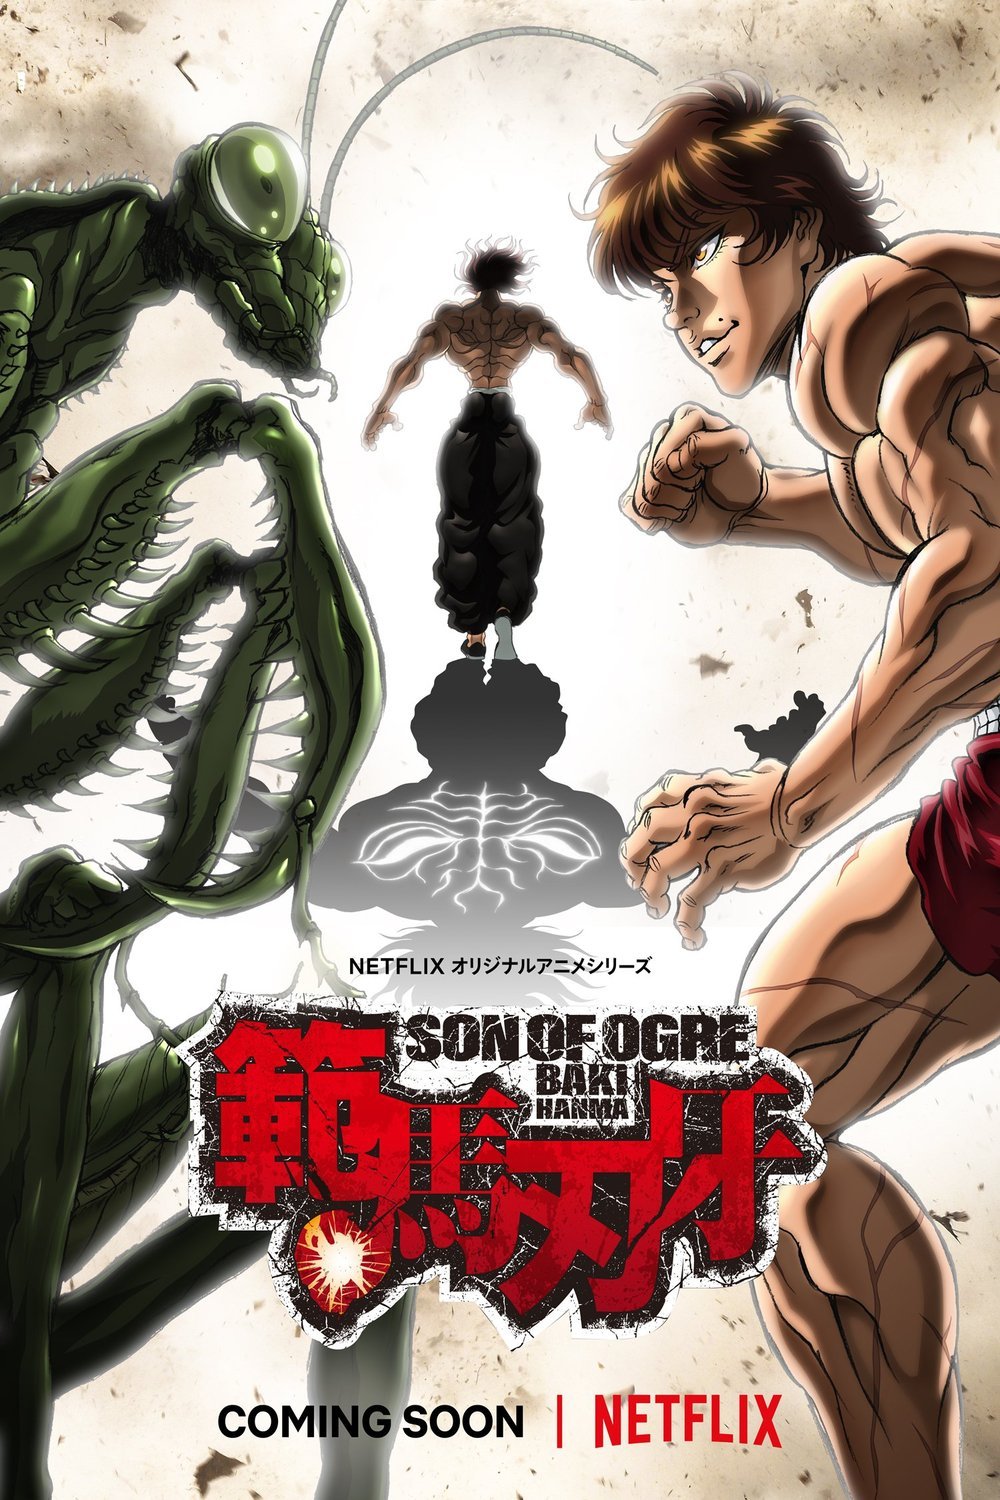 Japanese poster of the movie Hanma Baki: Son of Ogre